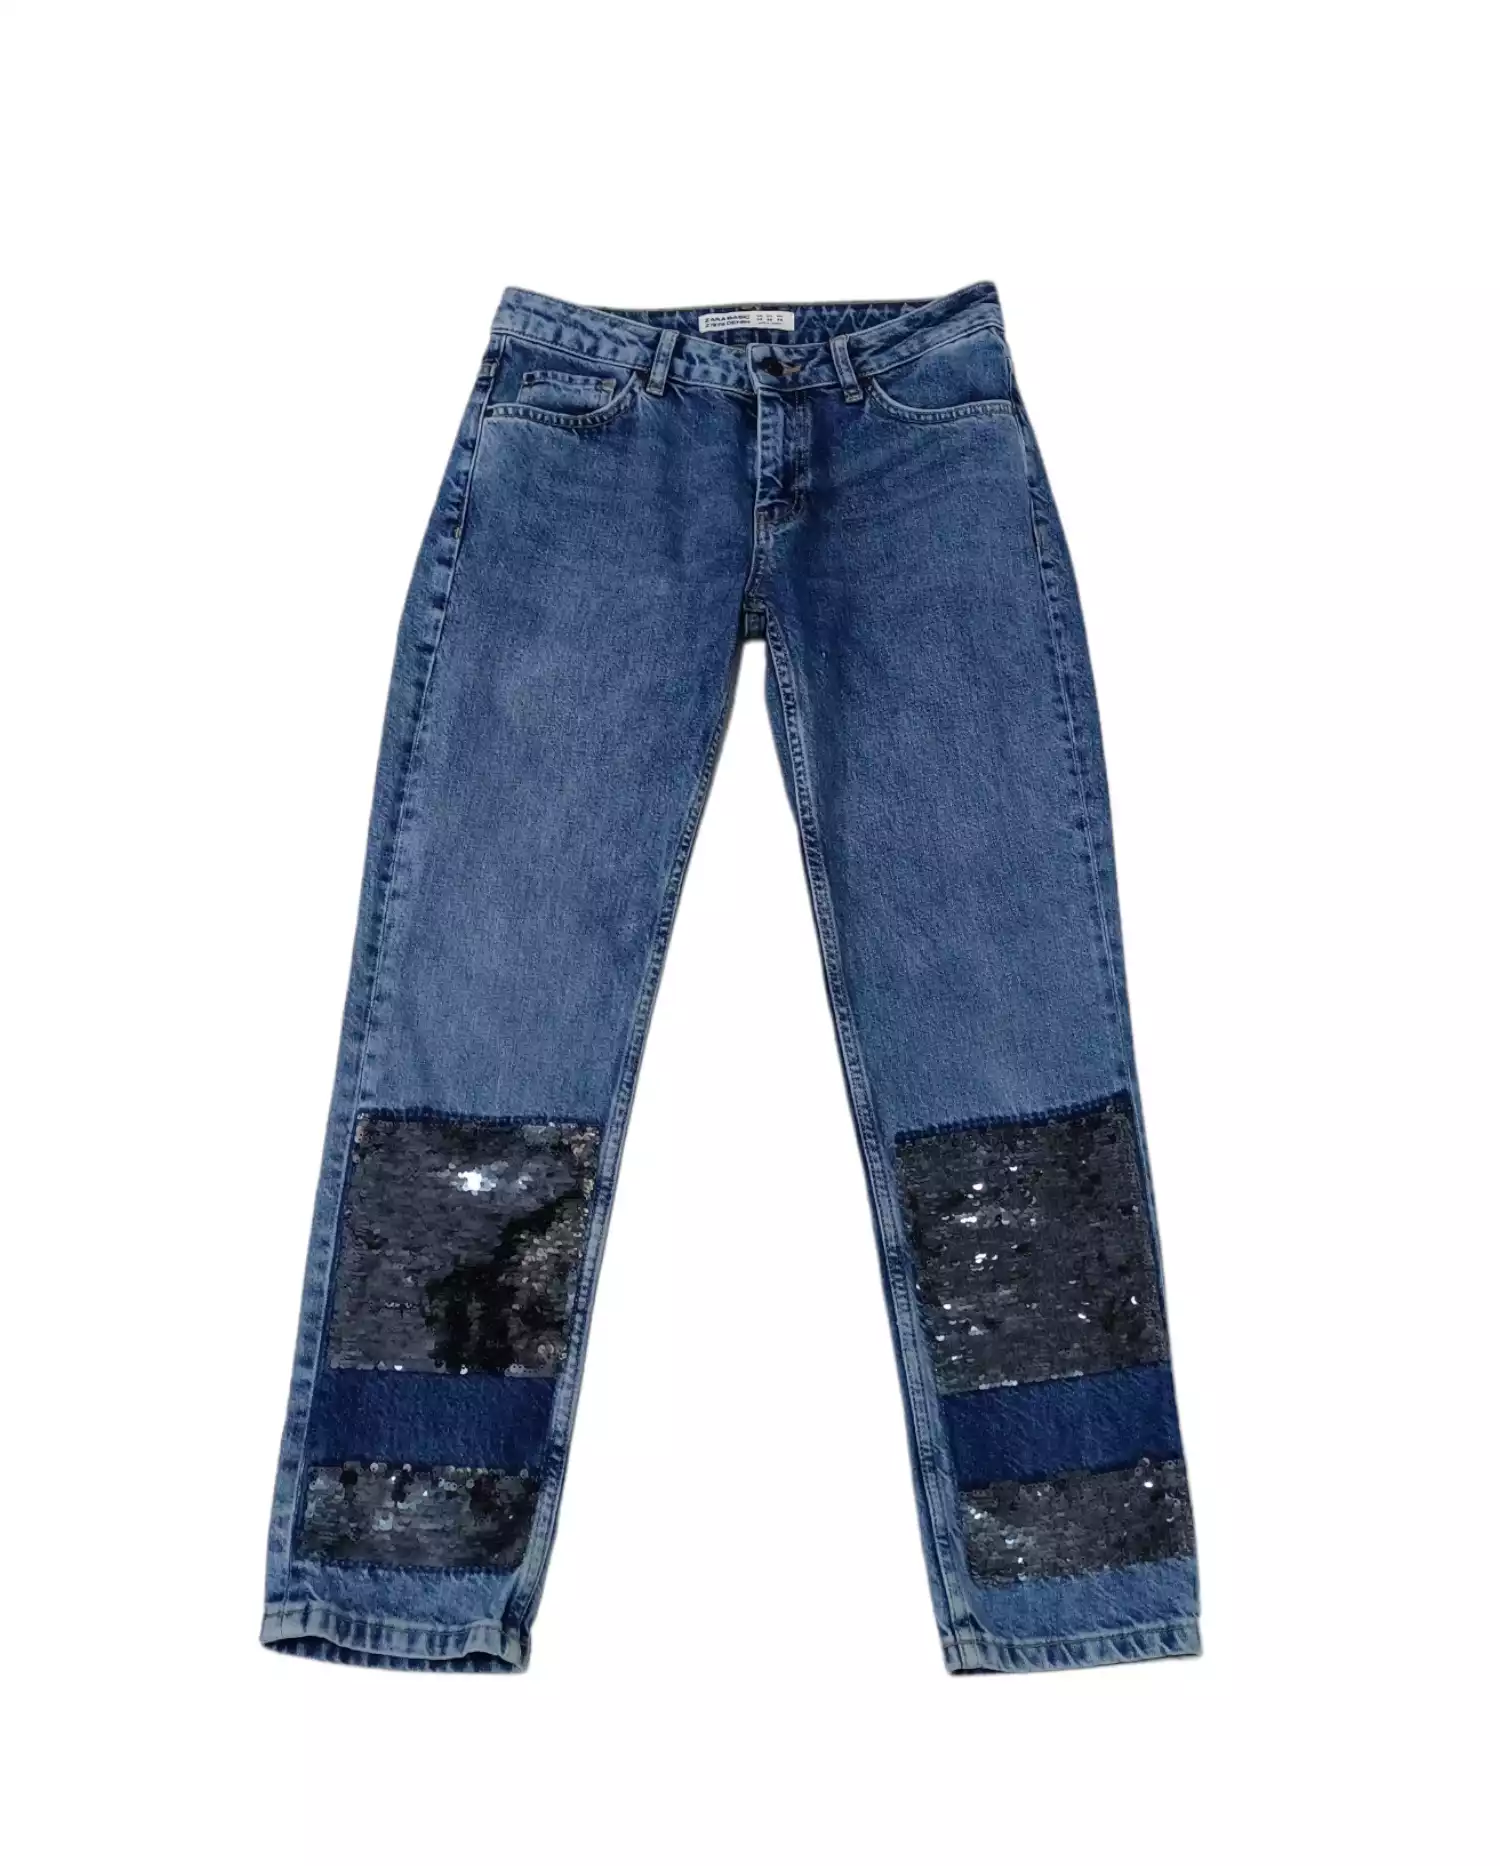 Denim Jeans by Zara